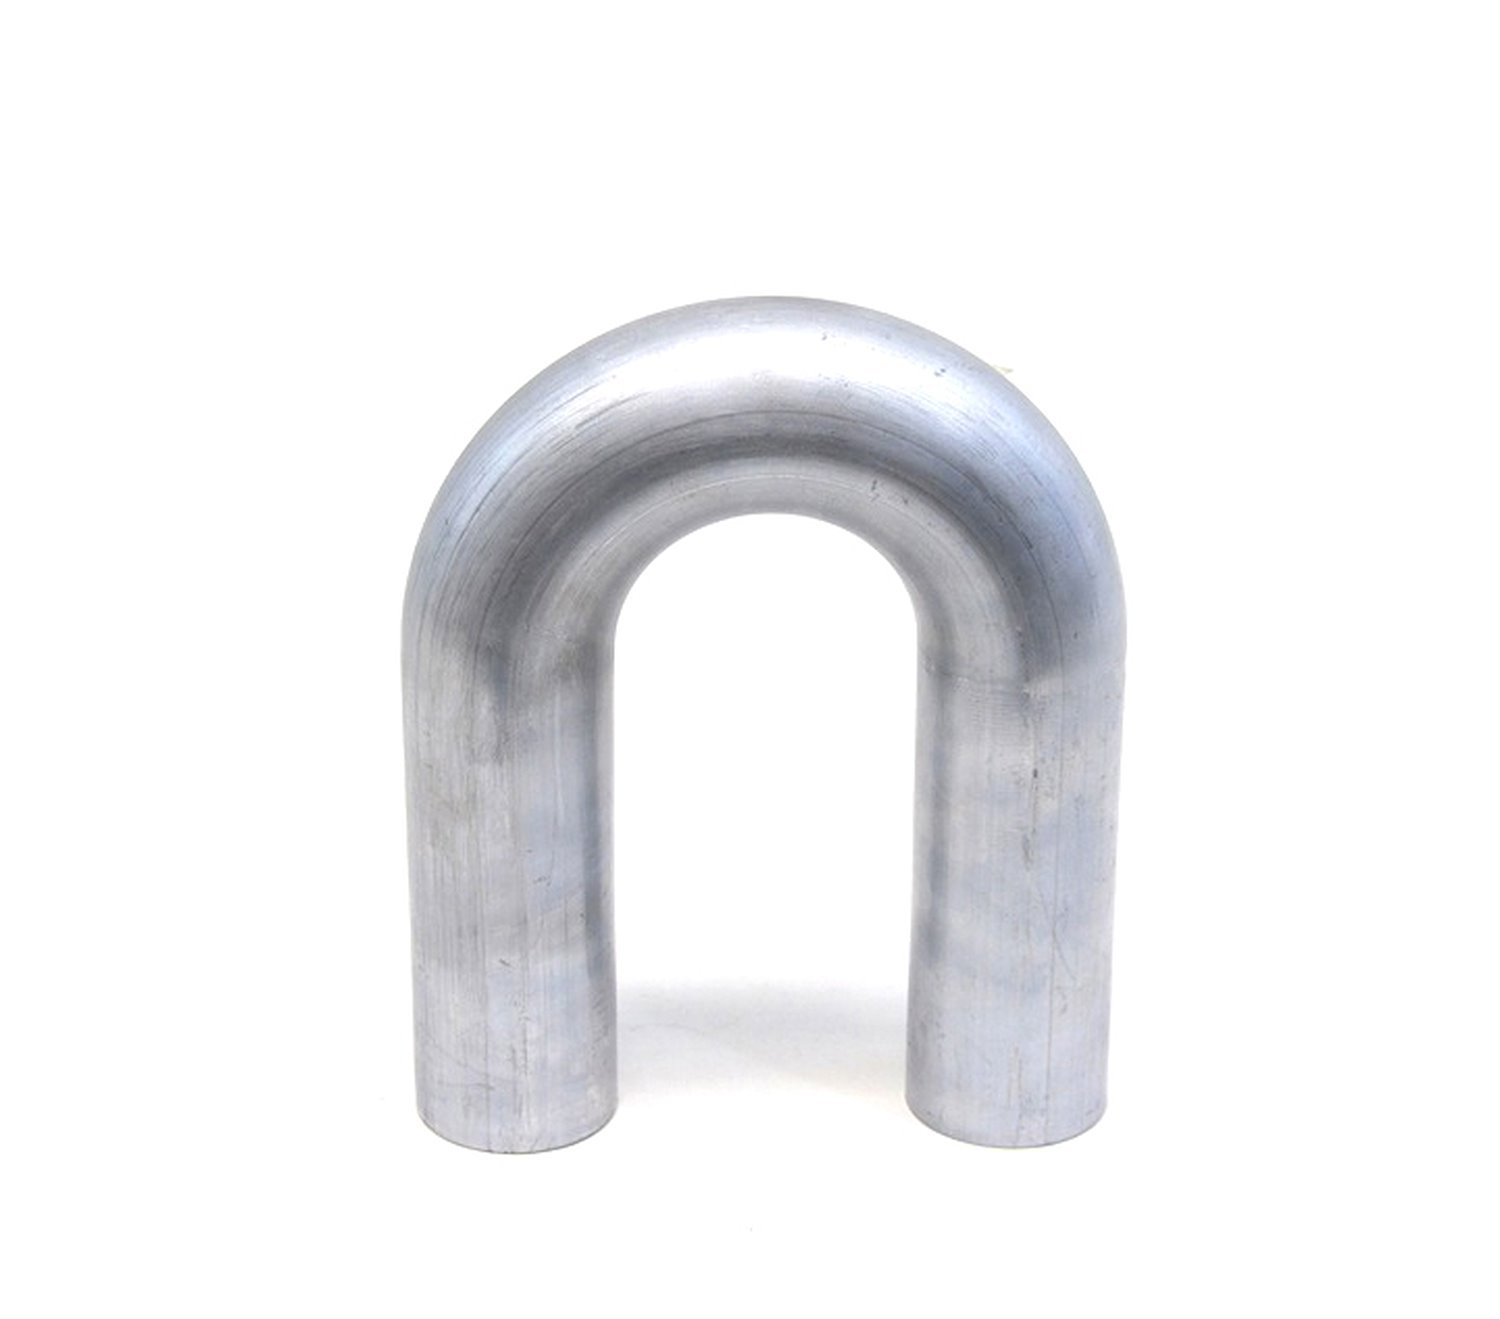 AT180-238-CLR-35 Aluminum Elbow Tube, 6061 Aluminum, 180-Degree U Bend Elbow Tubing, 2-3/8 in. OD, Tight Radius, 3-1/2 in. CLR